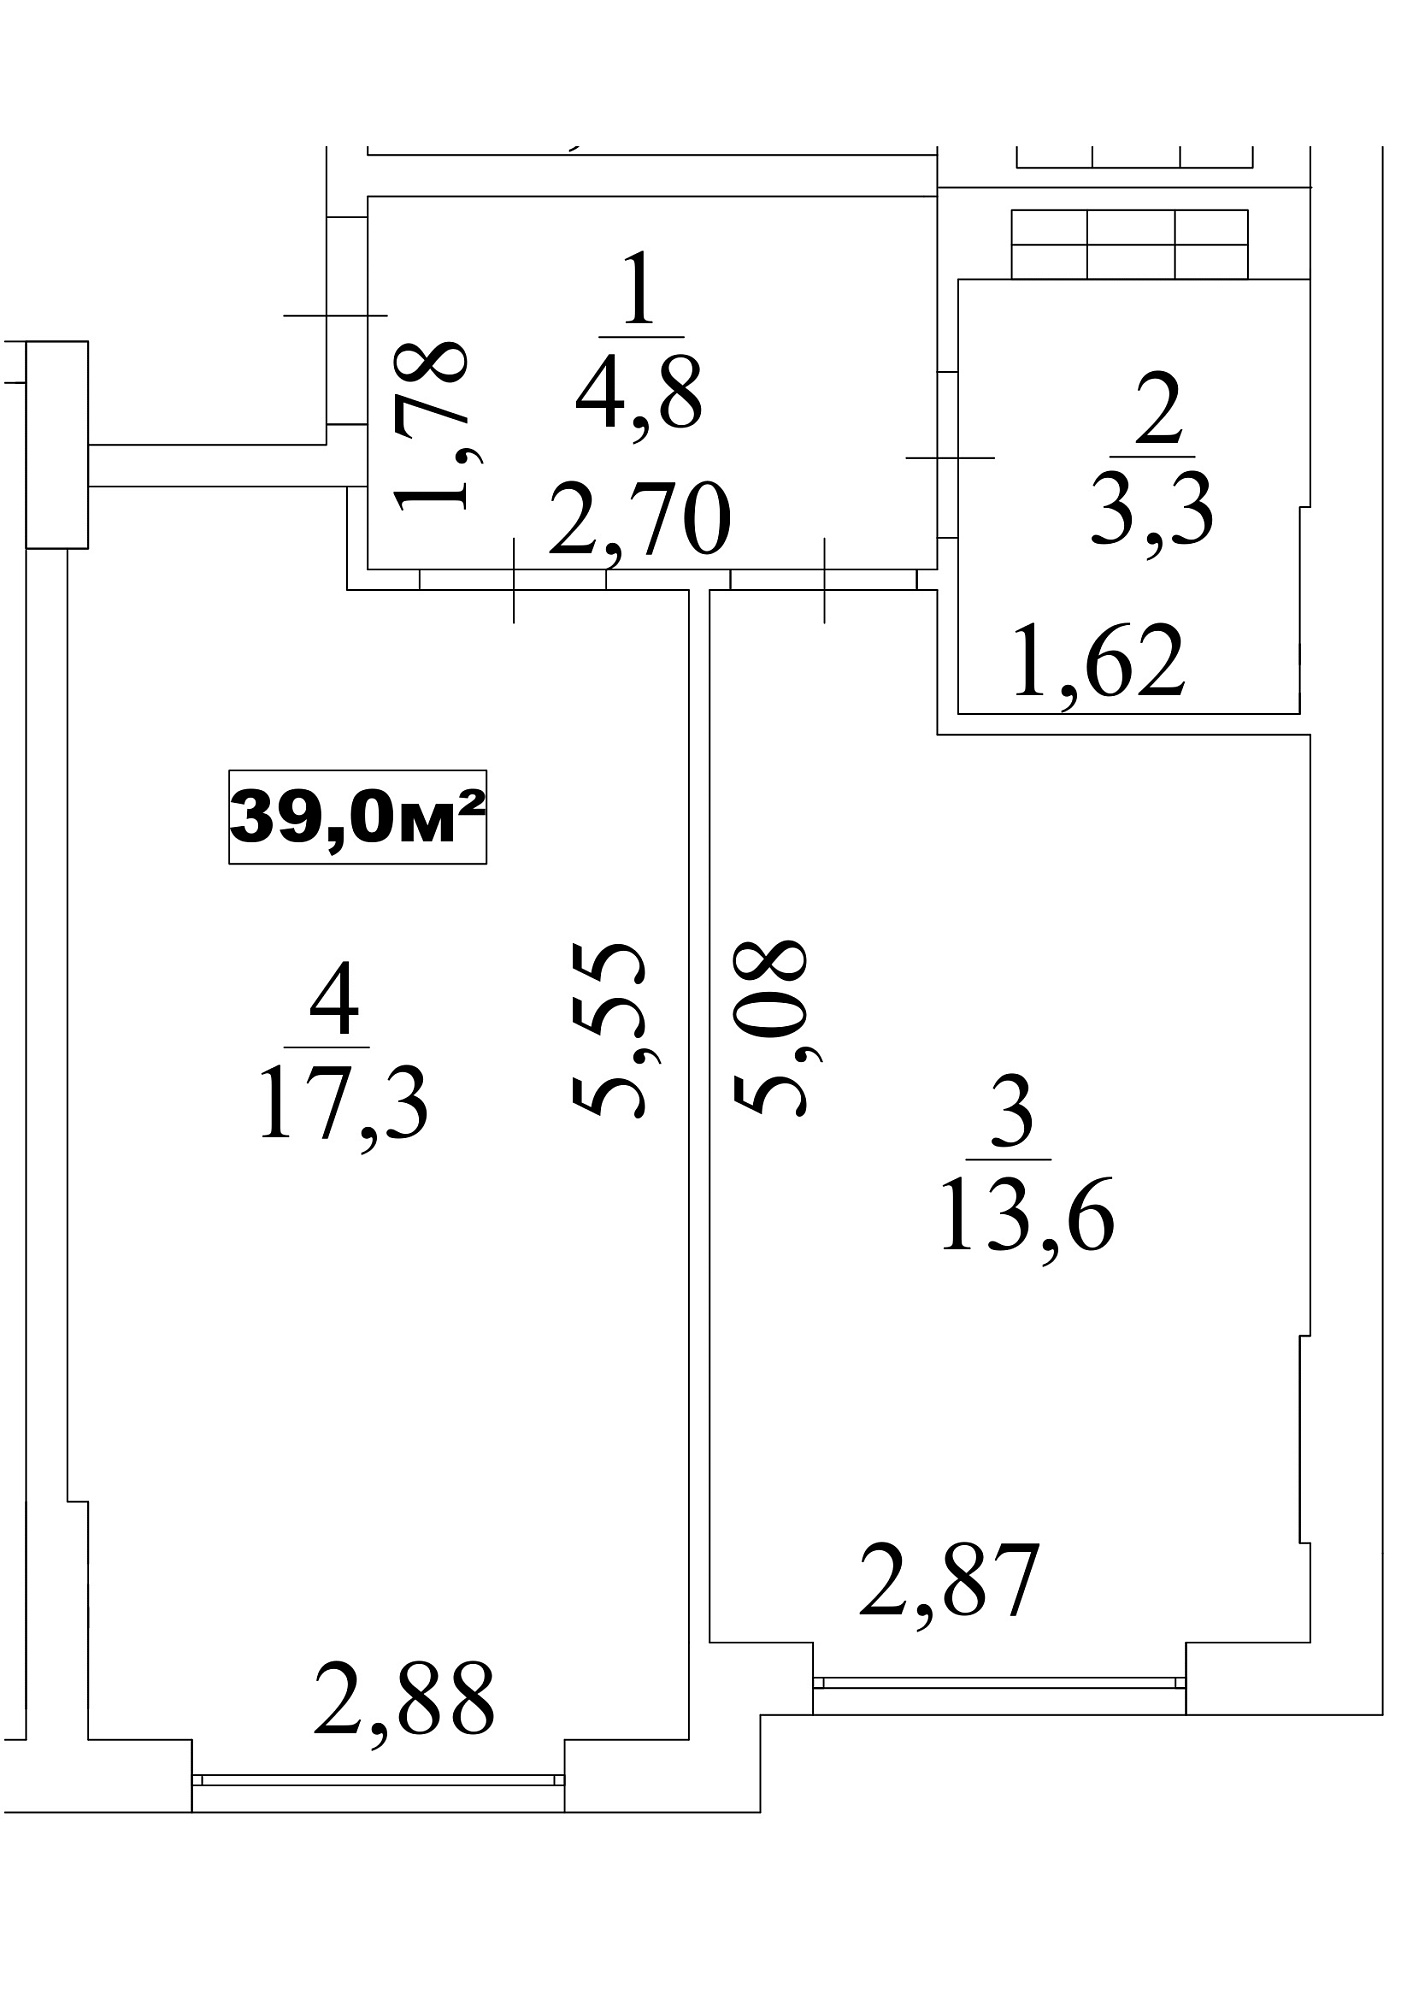 Планування 1-к квартира площею 39м2, AB-10-04/0034в.